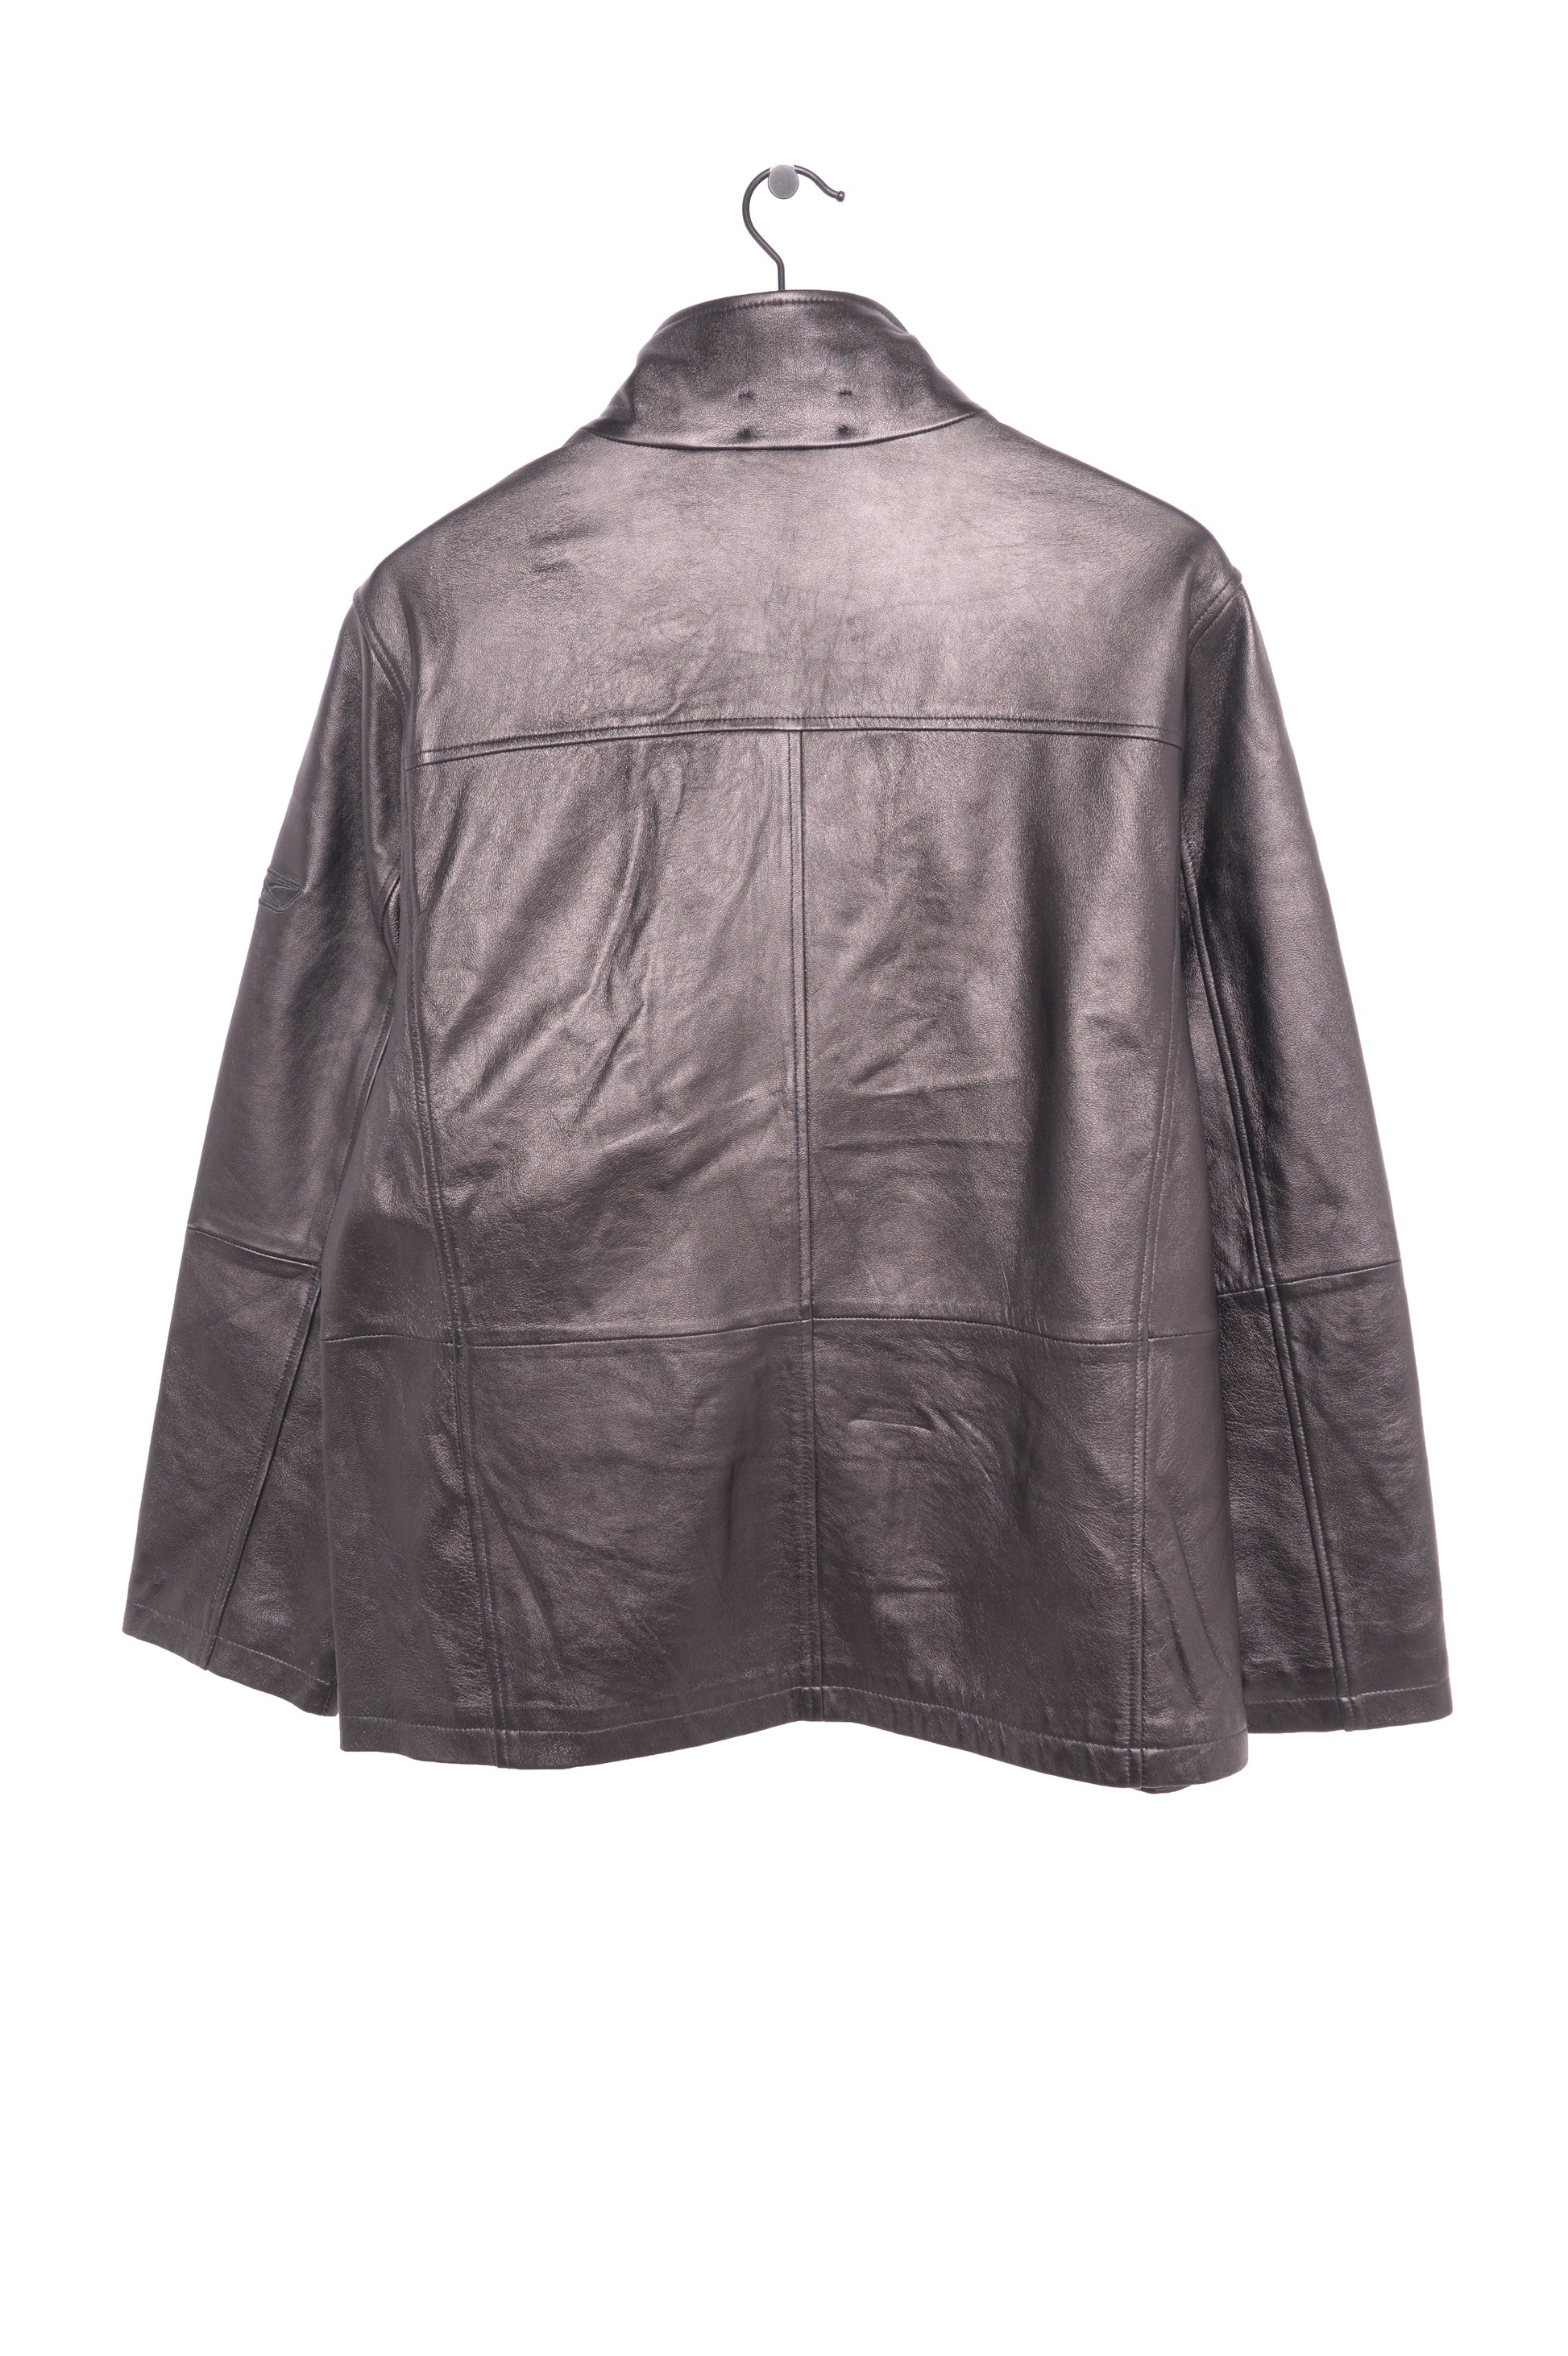 Unisex Vintage Las Vegas Raiders Soft Leather Jacket